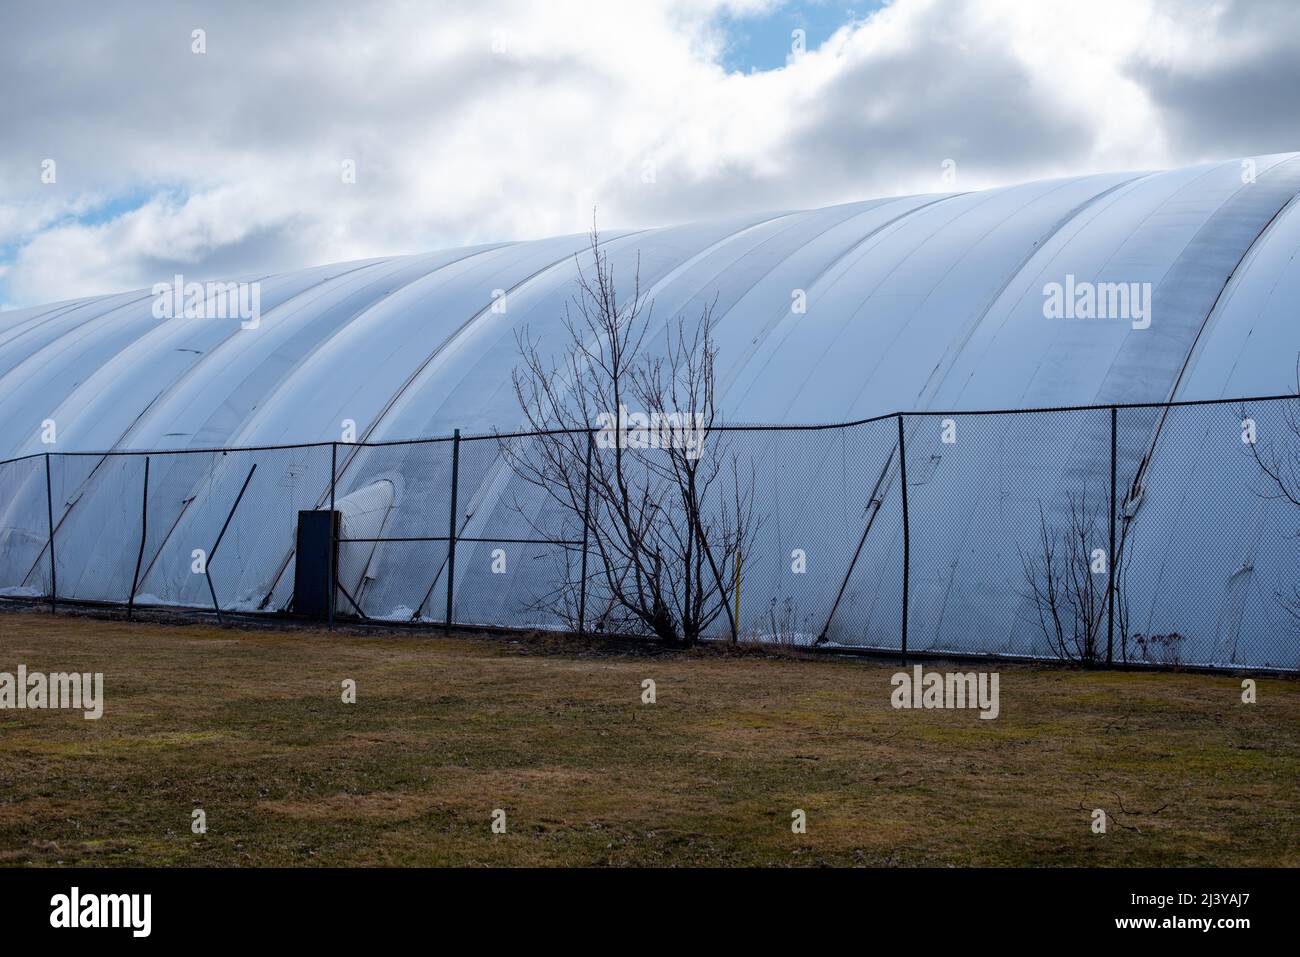 El exterior de una carpa cúpula de pista de tenis interior semipermanente blanca. El patrón simétrico de politeno de la burbuja de aire presurizada prefabricada Foto de stock